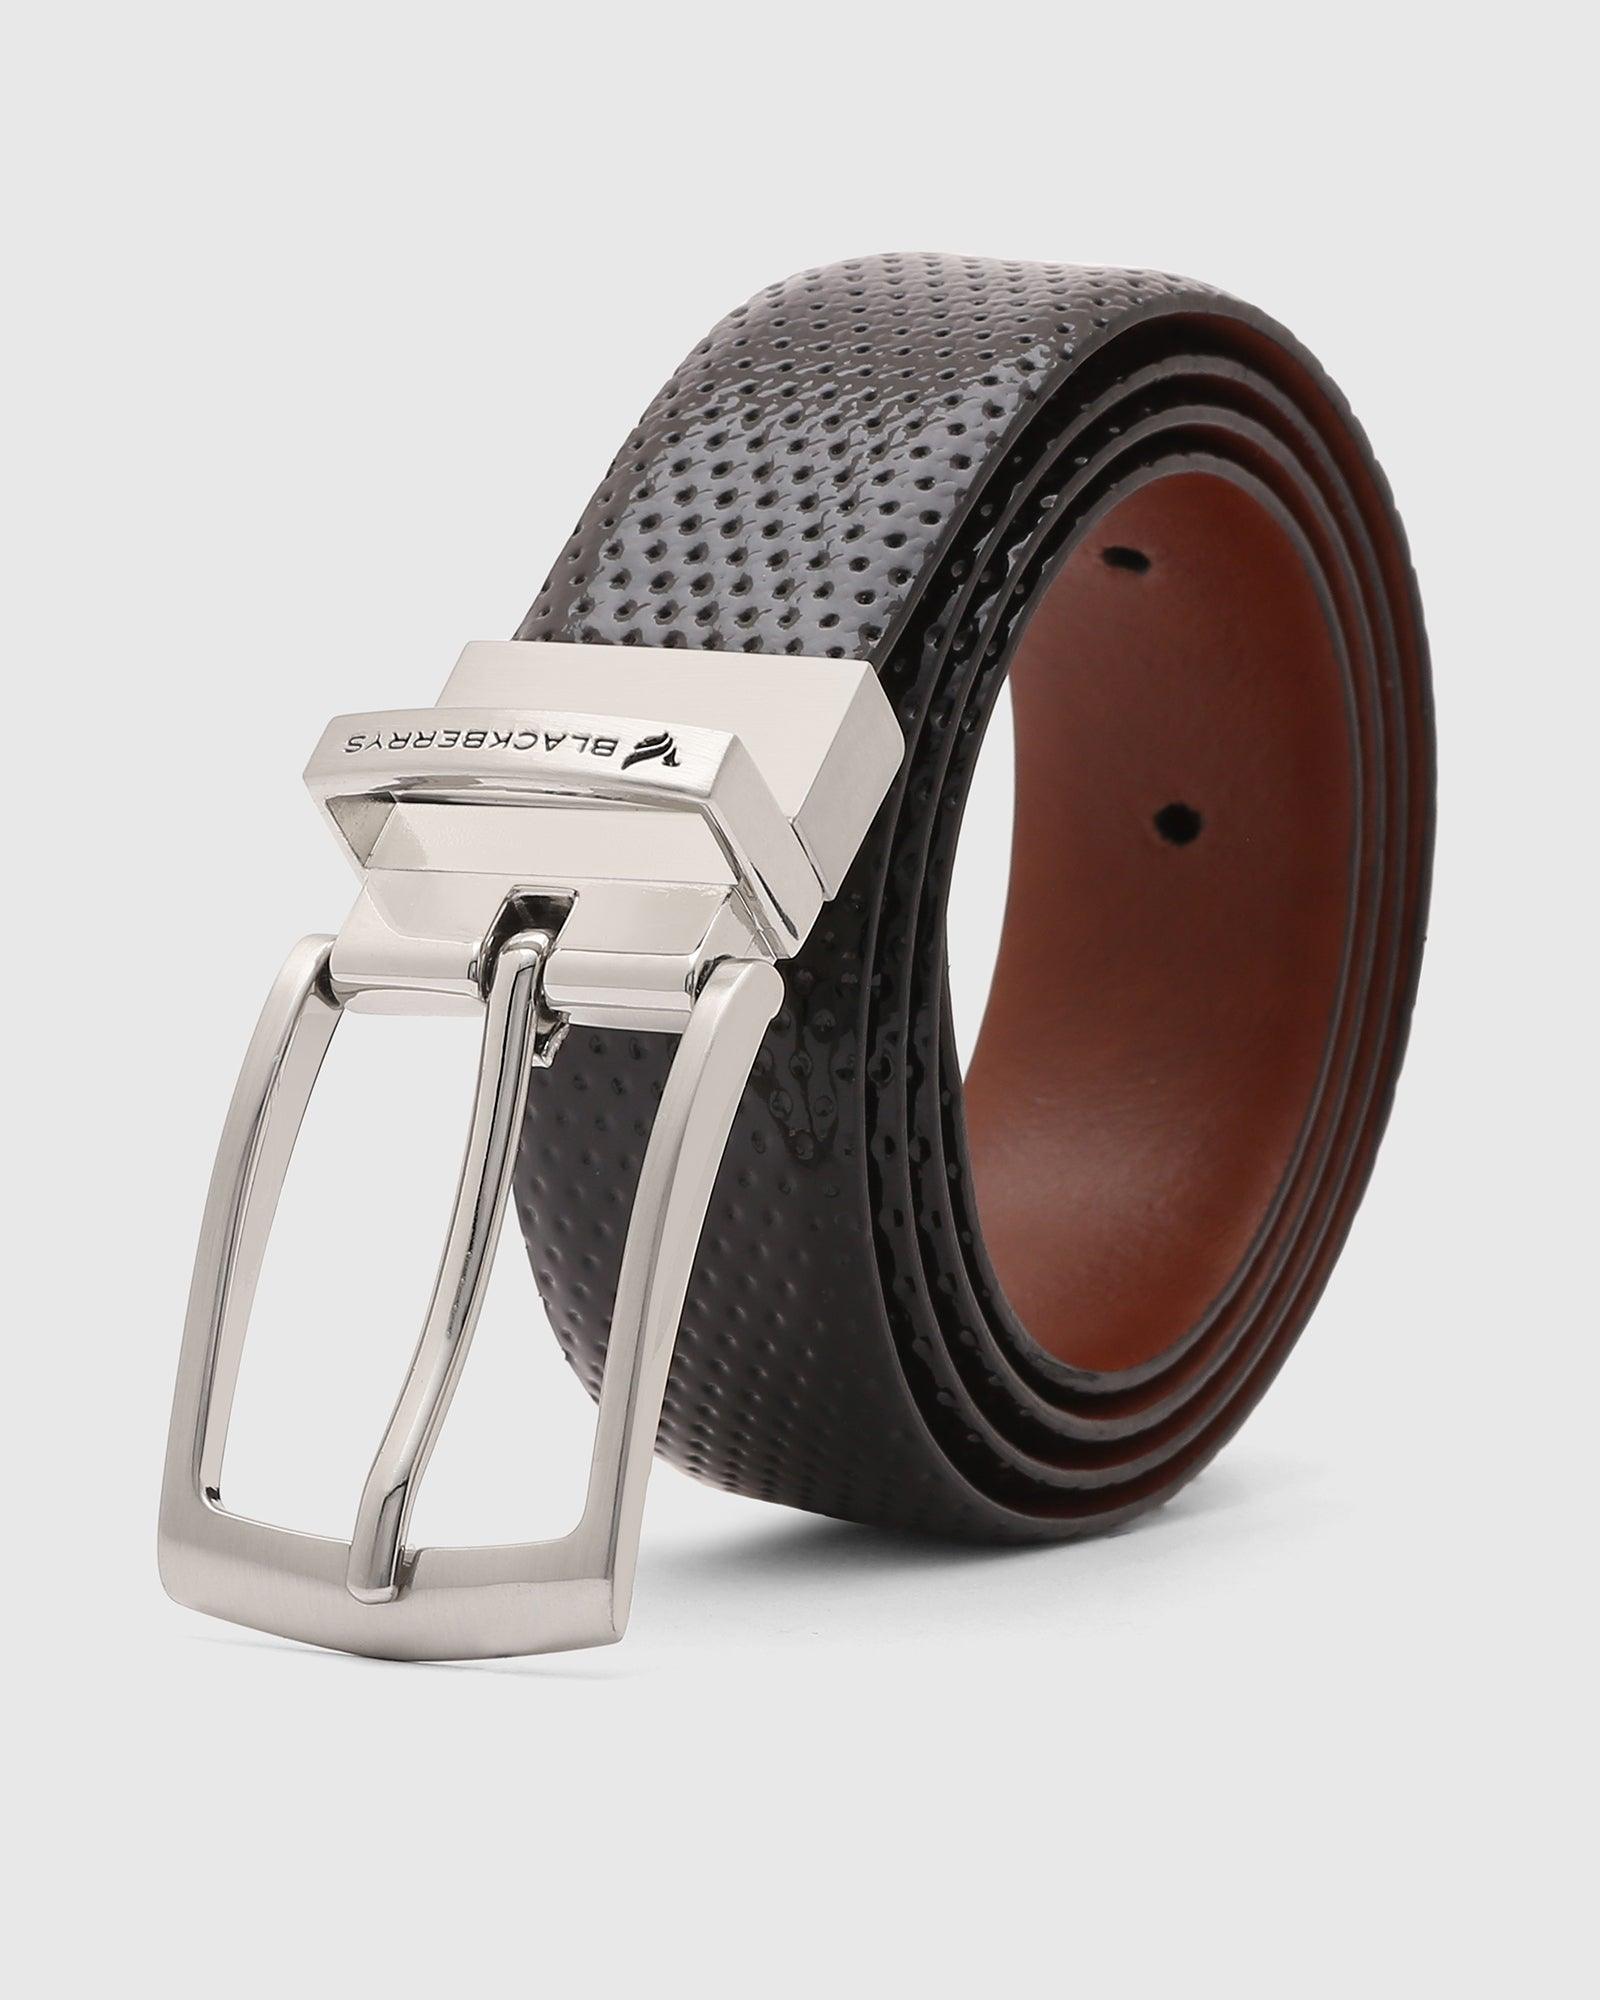 Leather Black Tan Textured Belt - Qadif